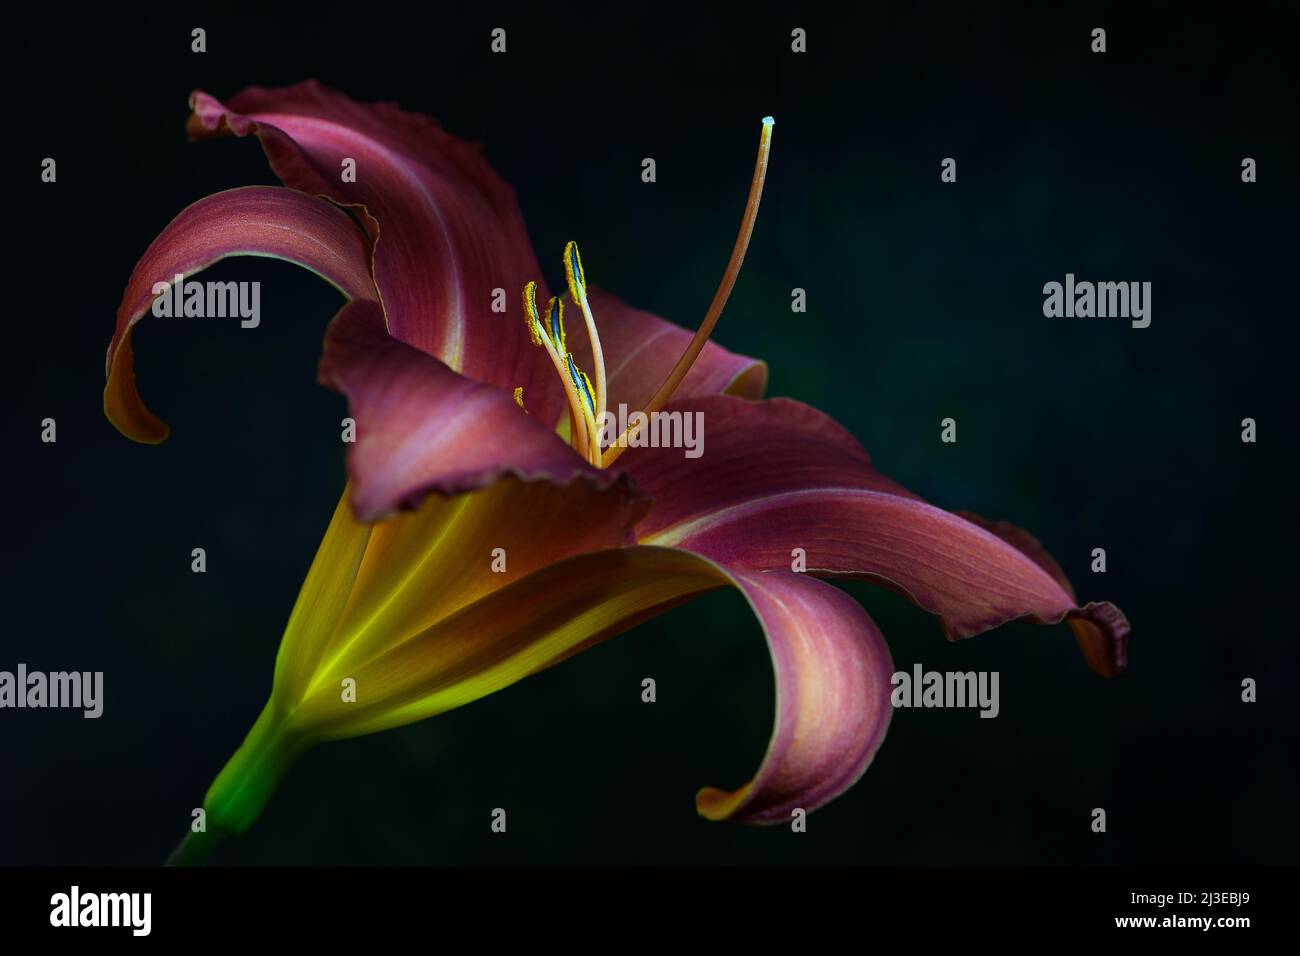 Un giglio di giorno color pesca -famiglia Hemerocallis- fiore in morbido, forte luce d'atmosfera scura con lo stemma acceso; catturato in uno Studio Foto Stock